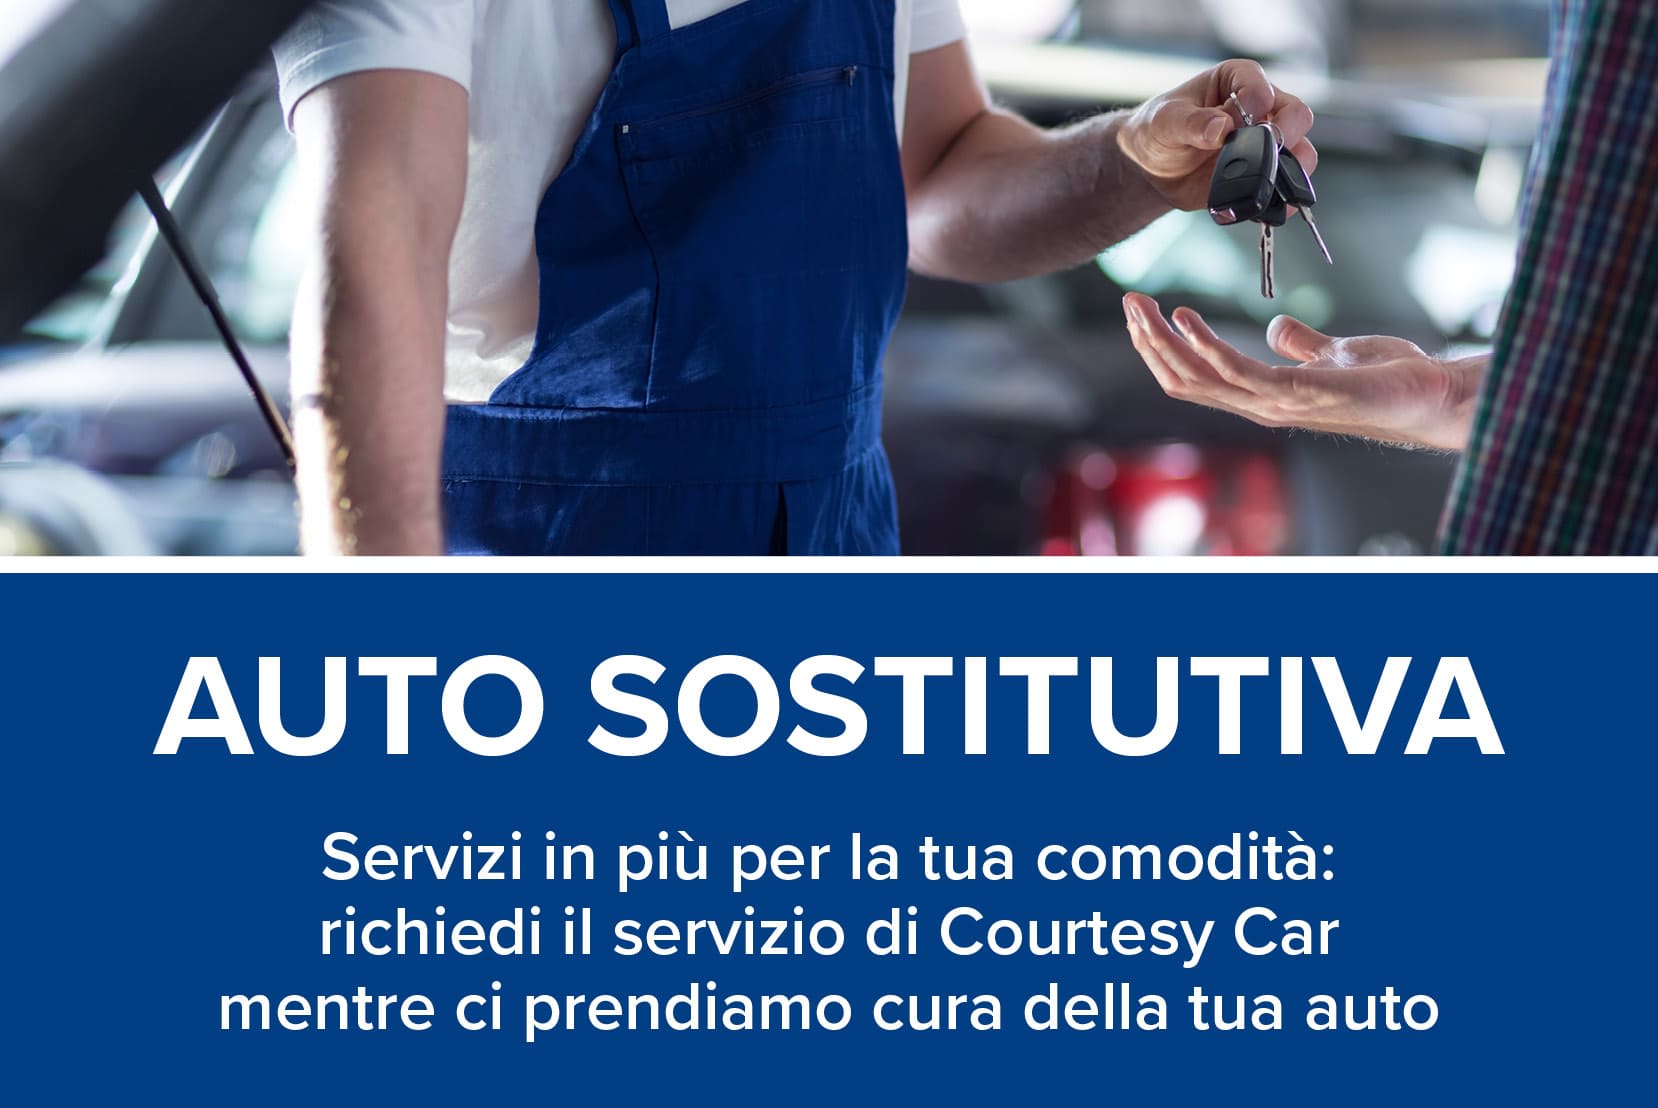 Vendita prodotti per officine meccaniche Perugia: Usato Meccanica